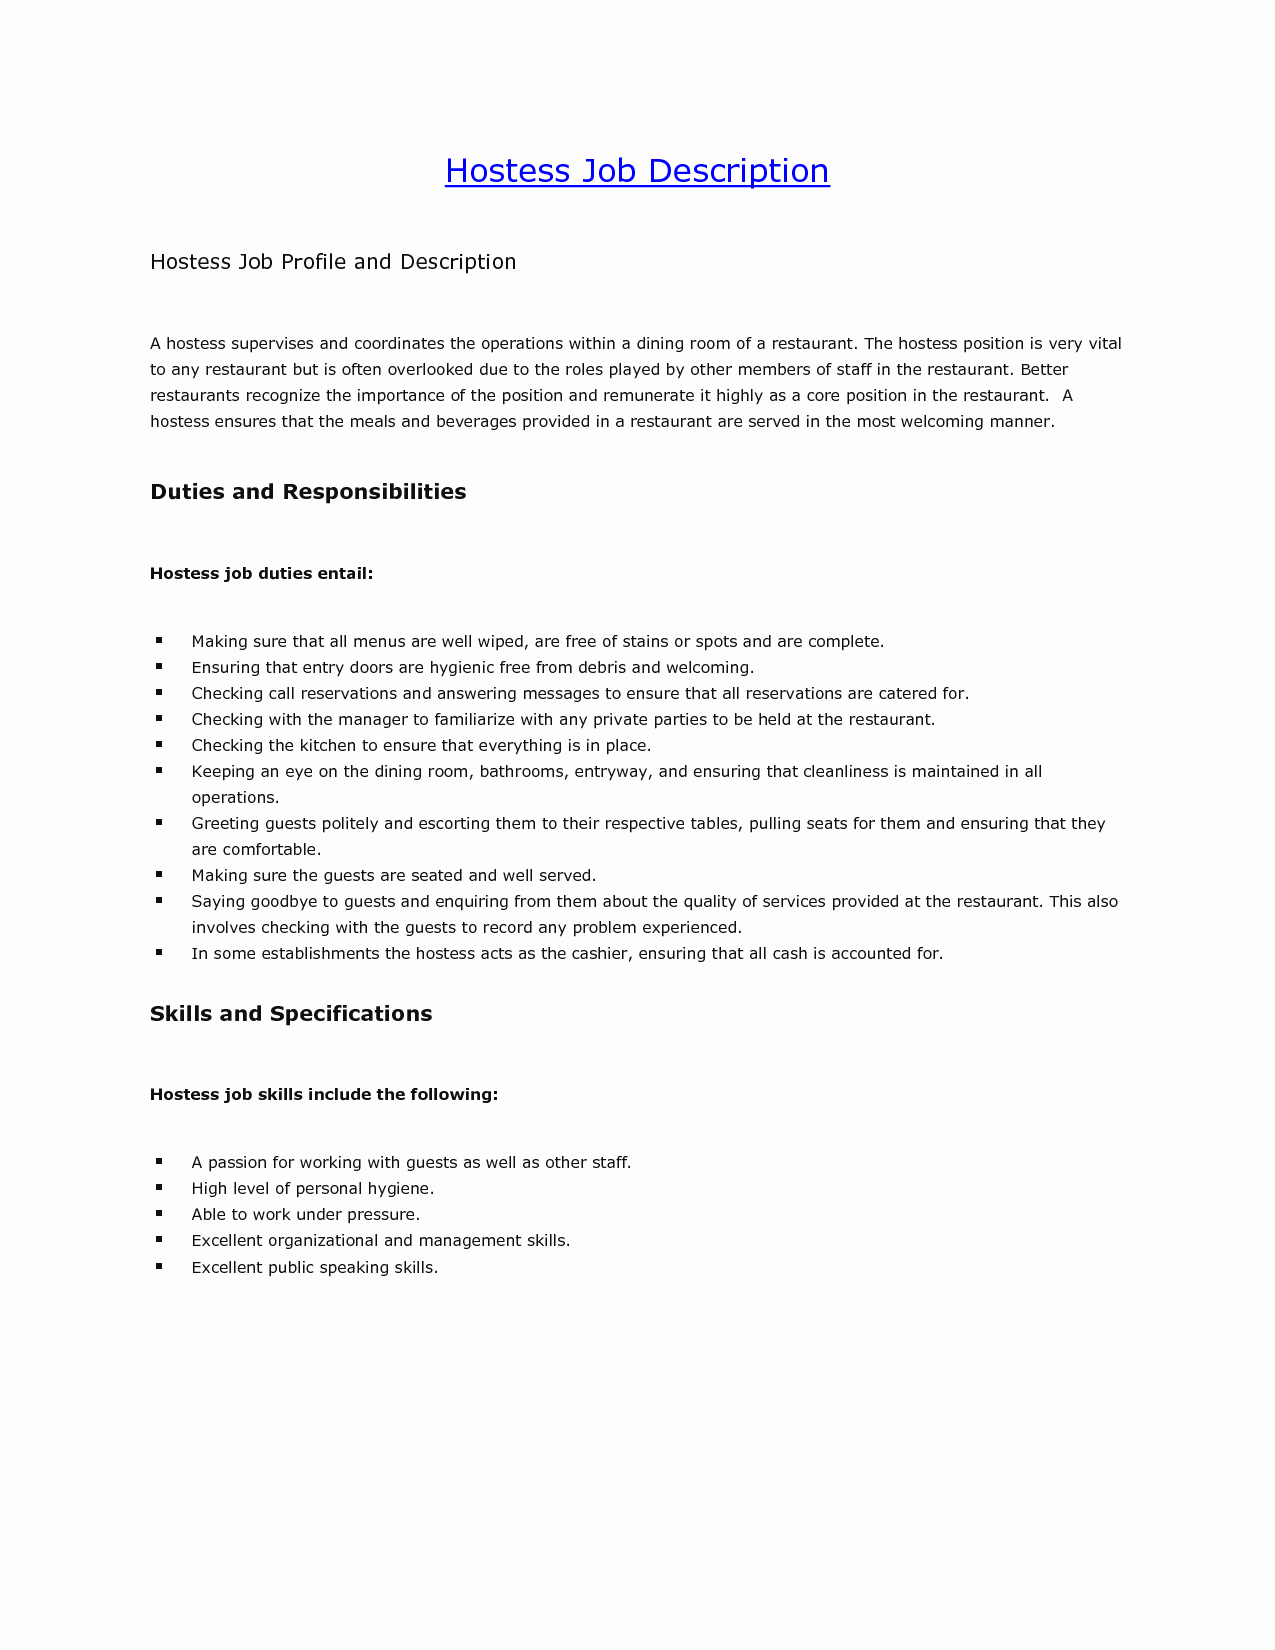 9 Hostess Job Description for Resume